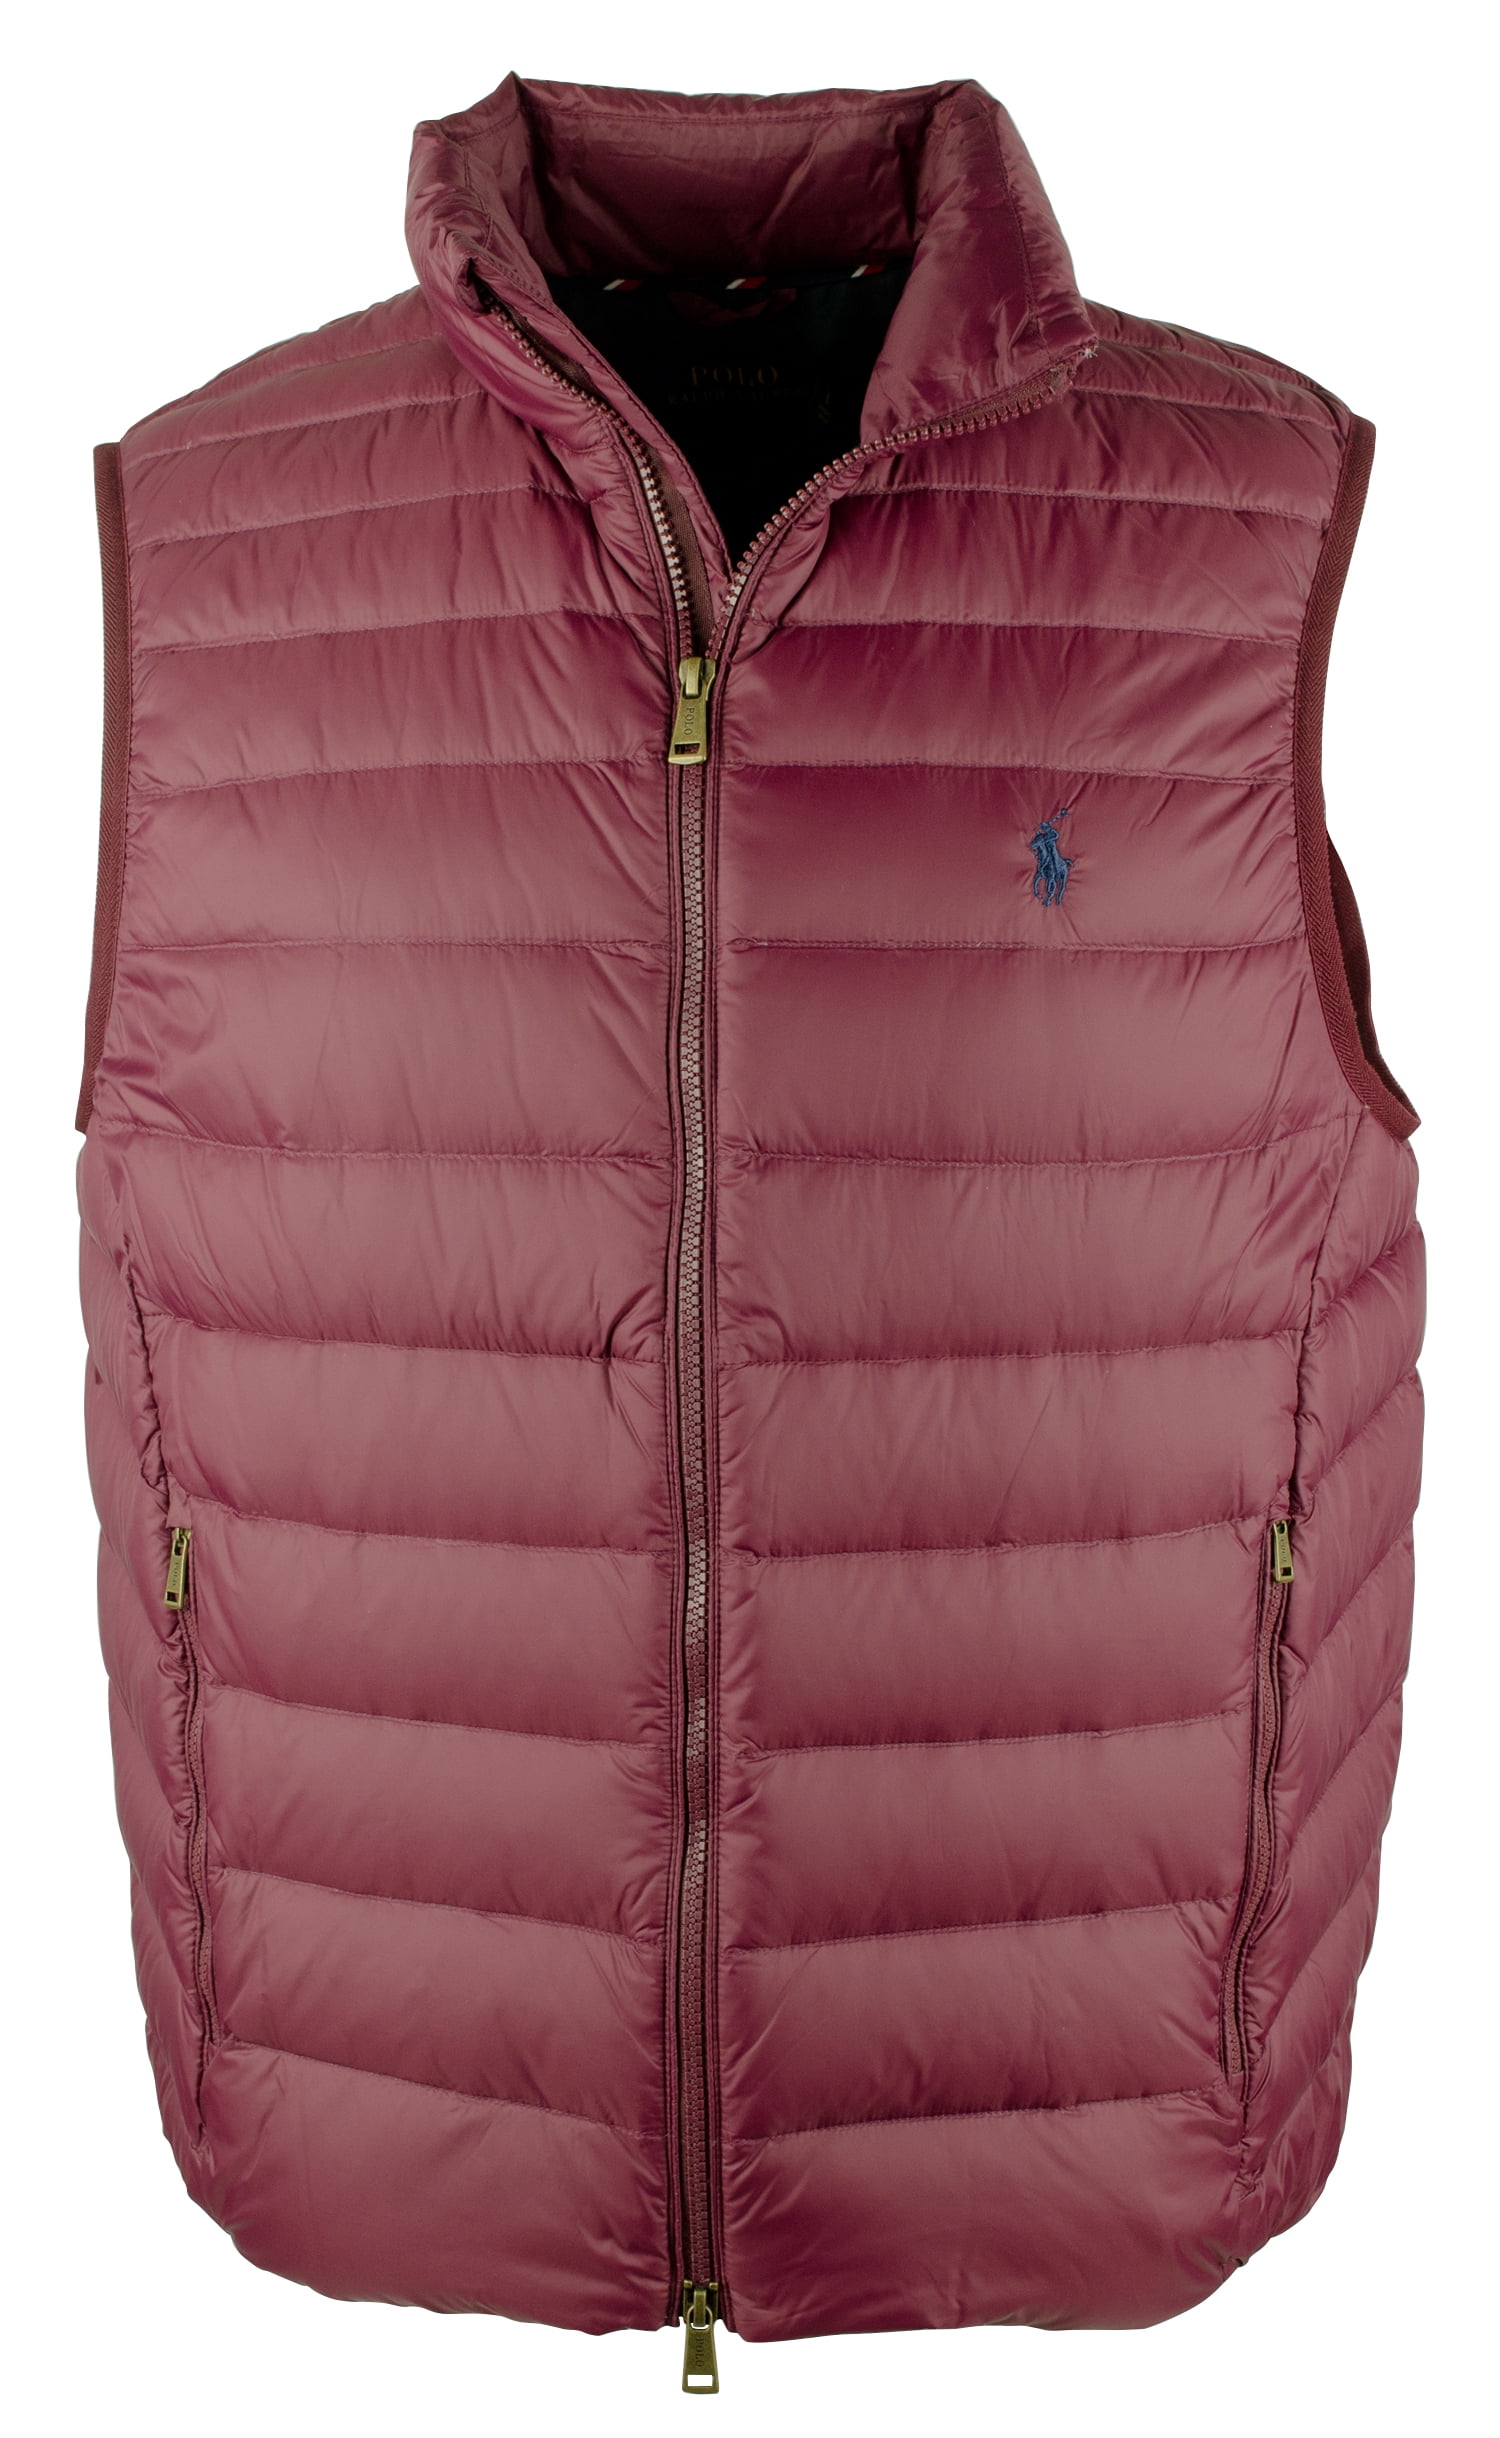 polo ralph lauren packable down vest